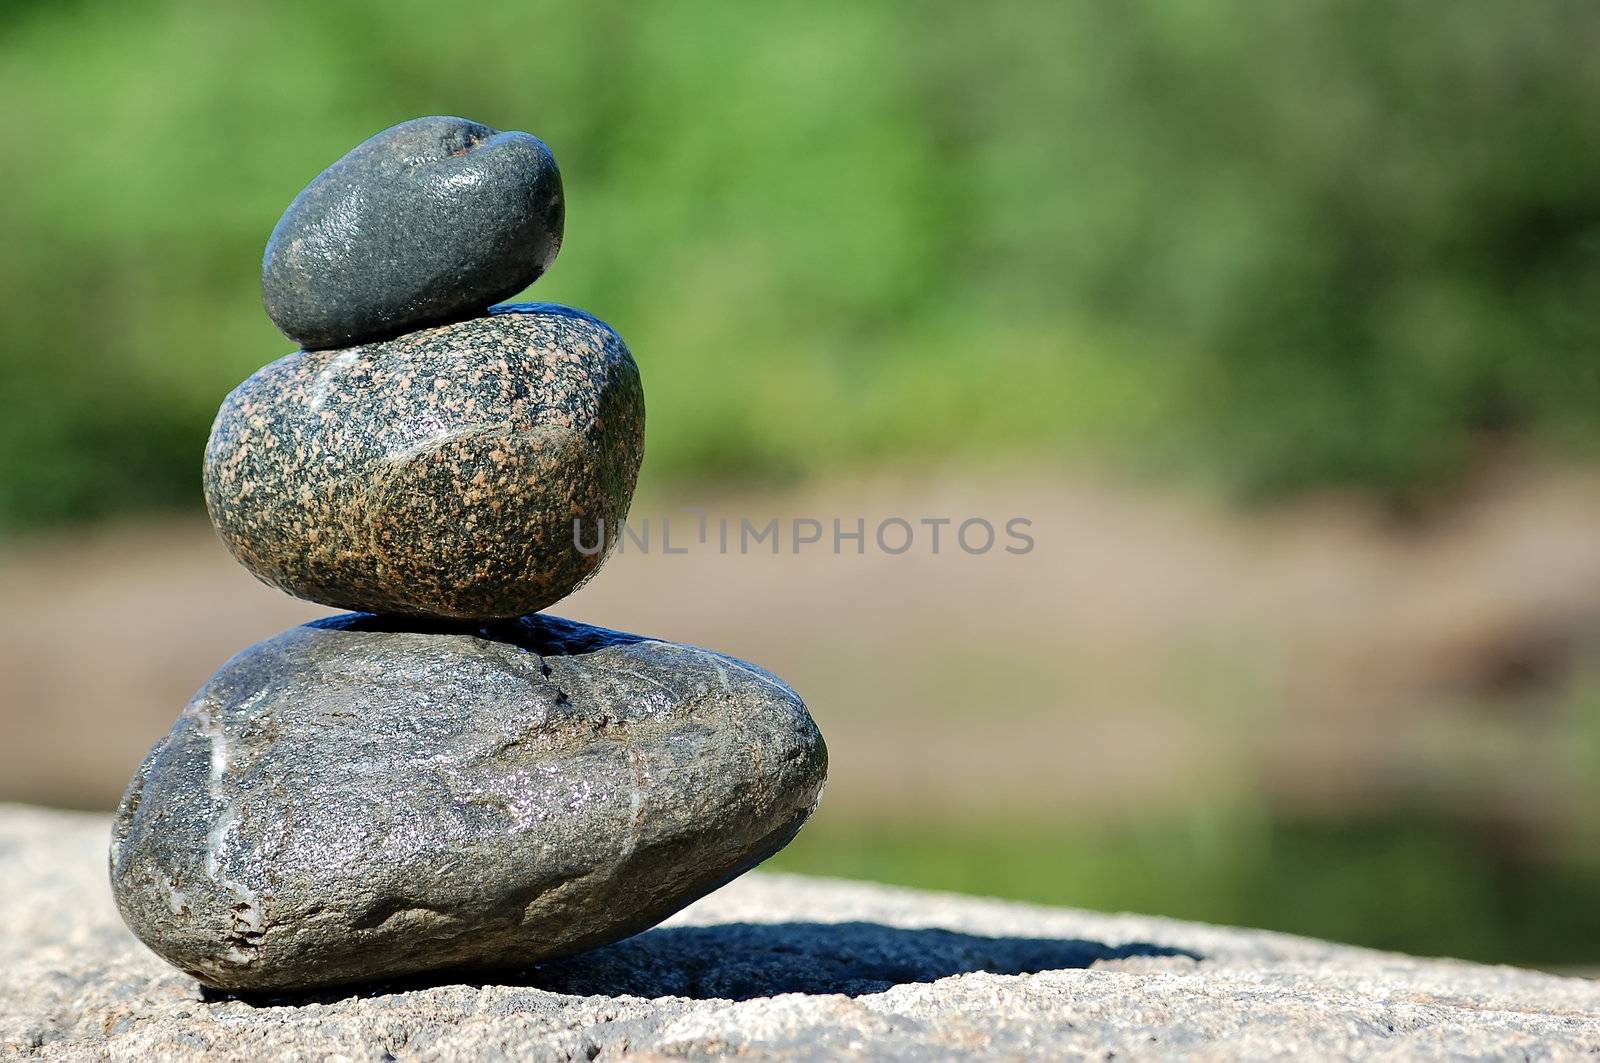 Zen Rocks by nialat